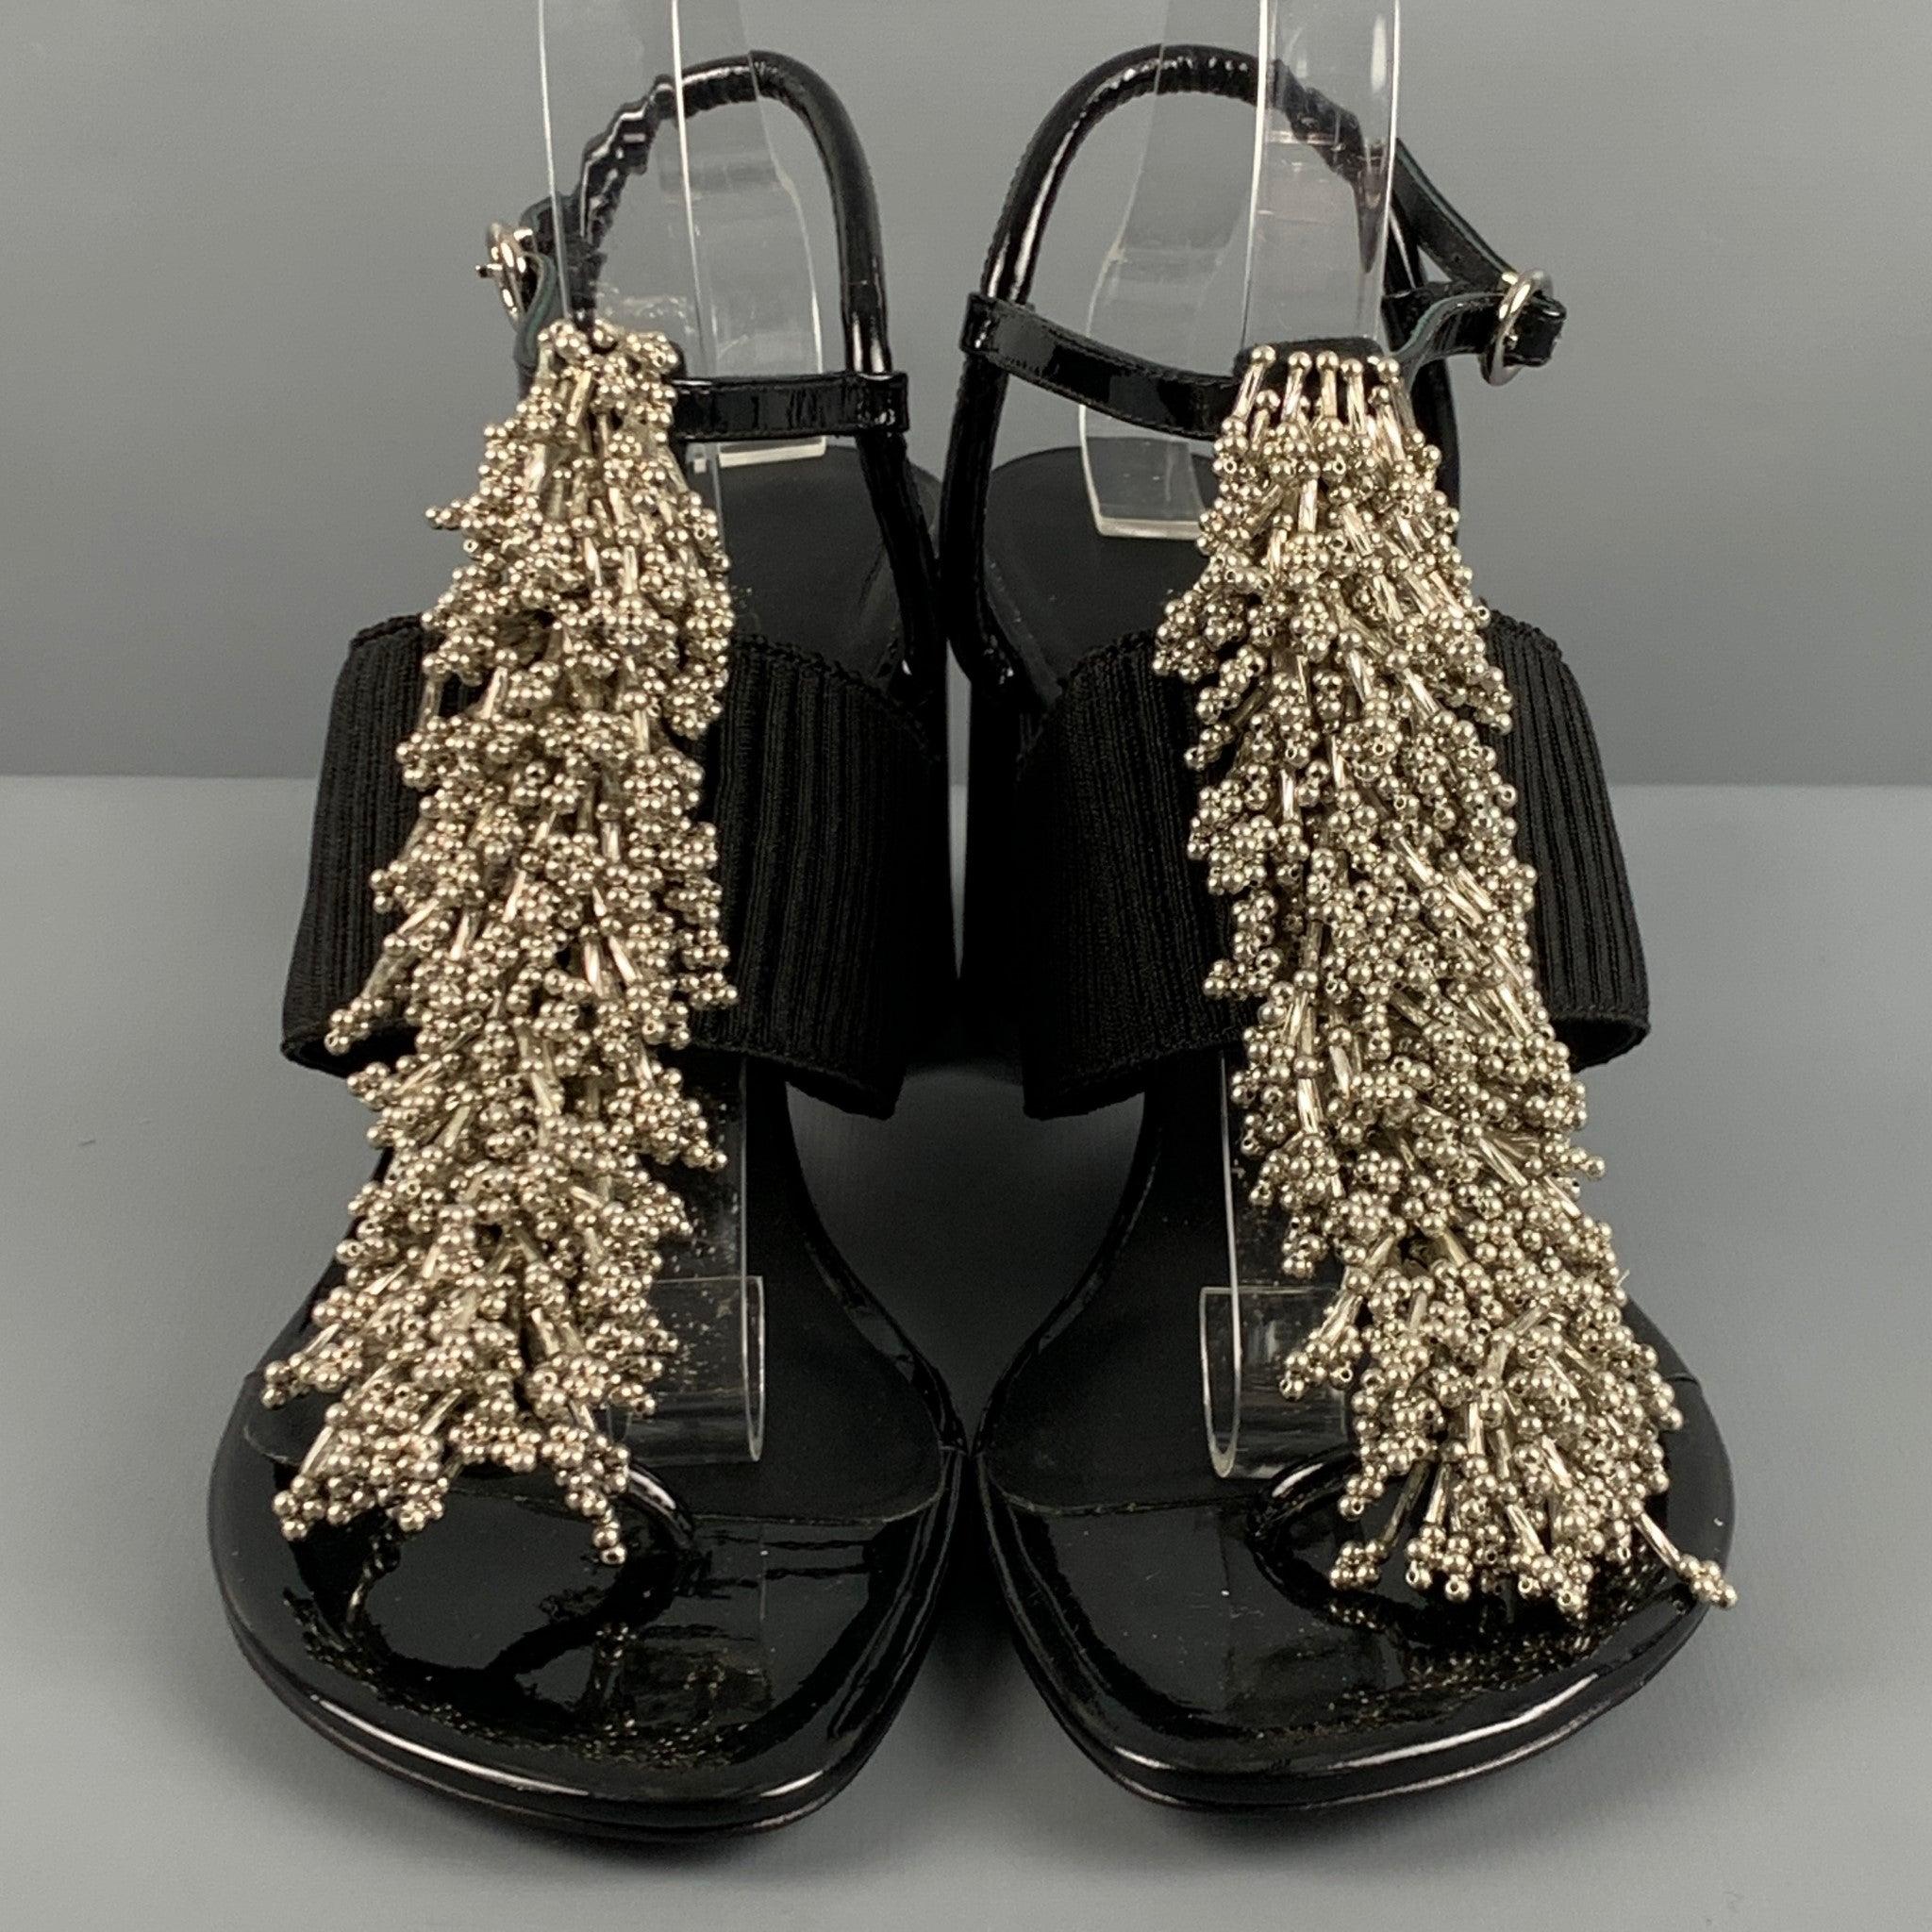 3.1 PHILLIP LIM Size 10 Black Patent Leather Aplique Ankle Strap Sandals For Sale 1